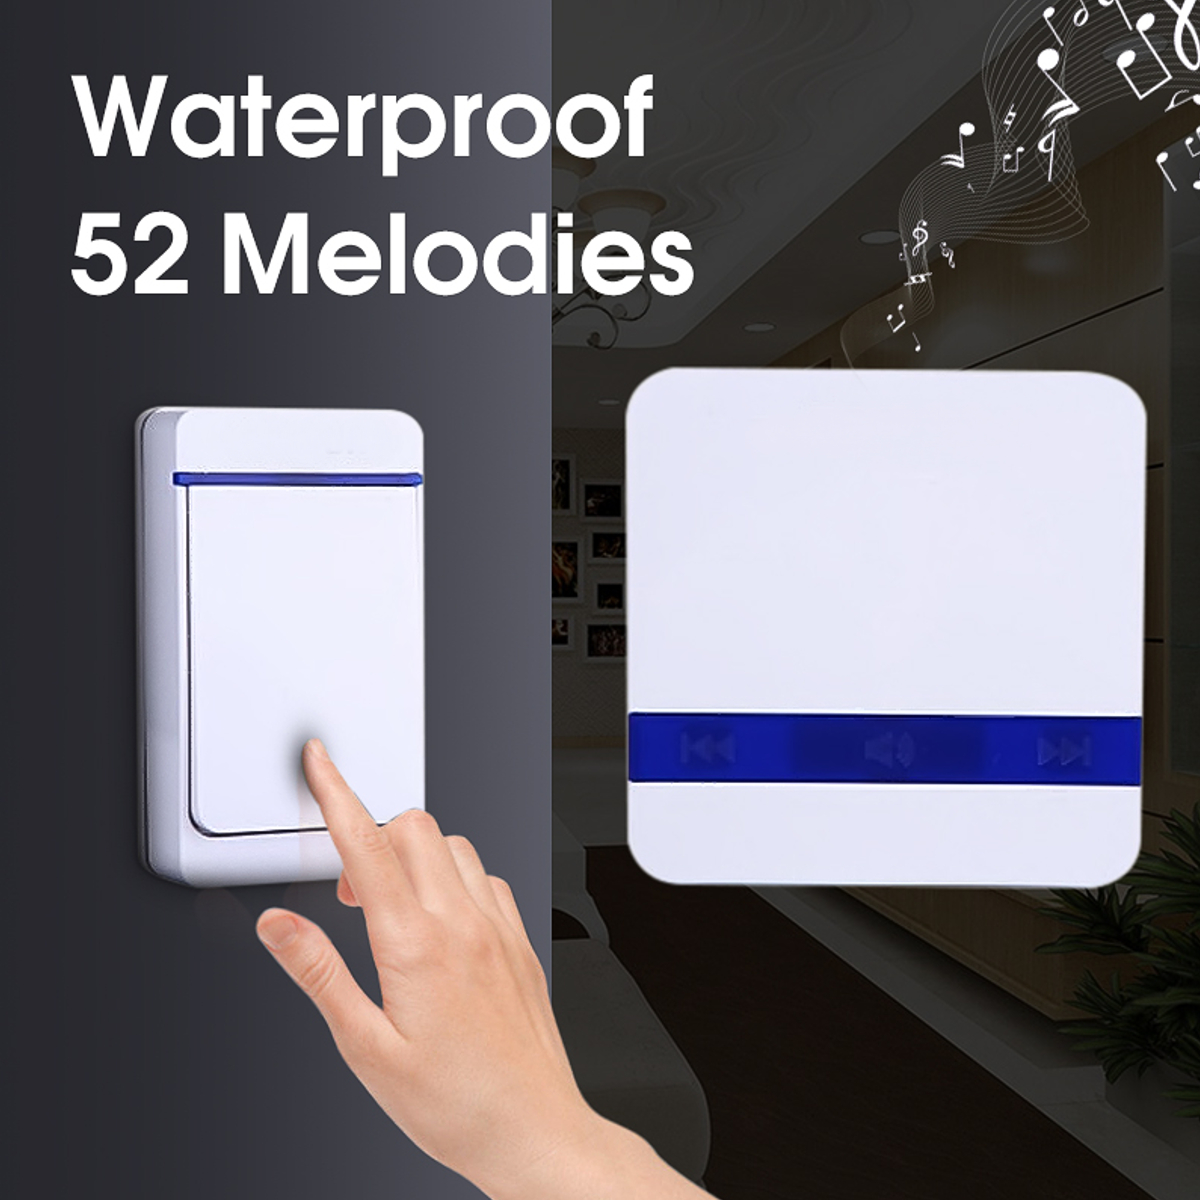 

52 Melodies 300m Range Waterproof Wireless Doorbell Alarm Ring Doorbell US/ EU Plug